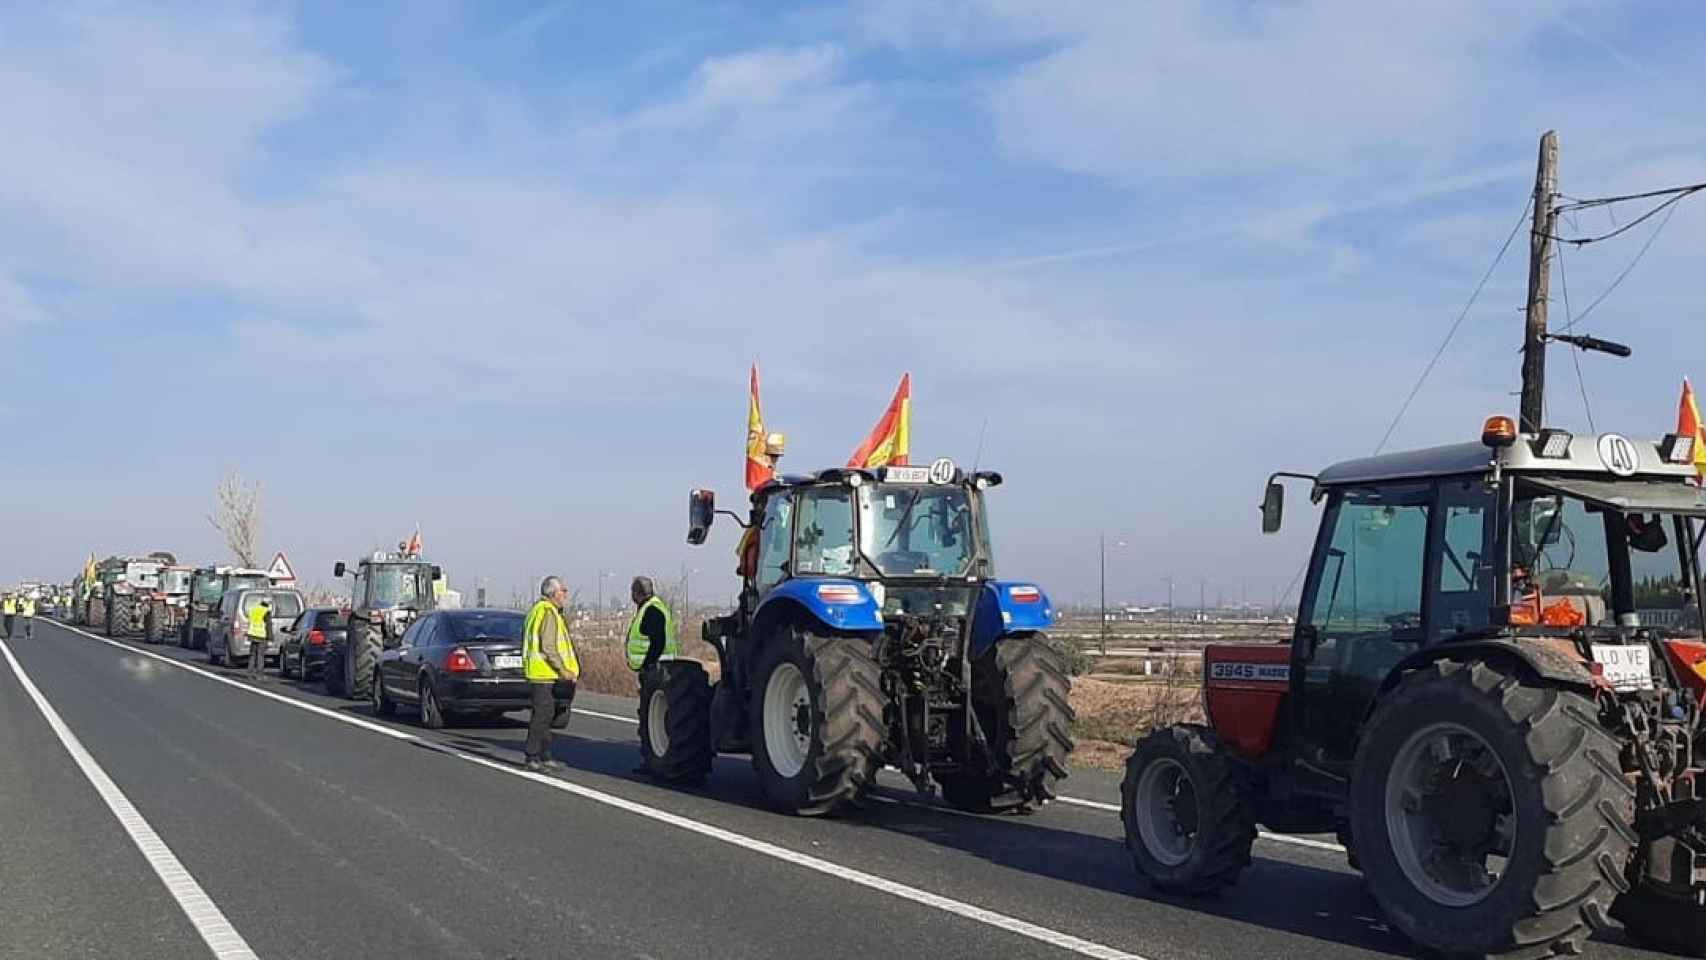 La carretera nacional 232 cortada por la movilización de agricultores.